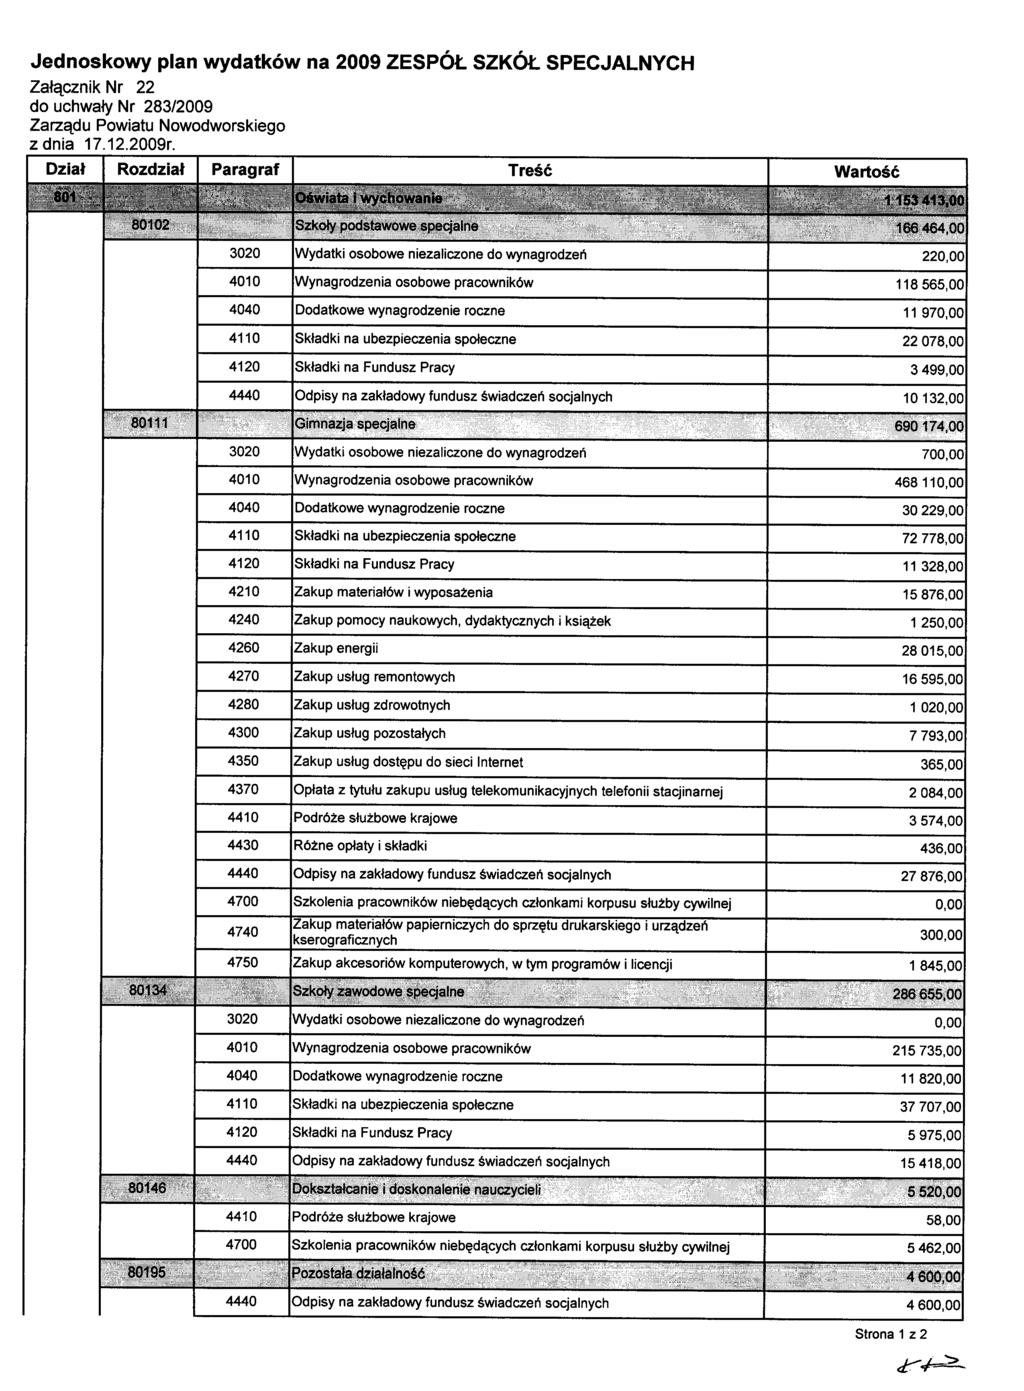 Jednoskowy plan wydatków na 2009 ZESPÓŁ SZKóŁ SPECJALNYCH Załącznik Nr 22 z dnia 17.12.2009r.